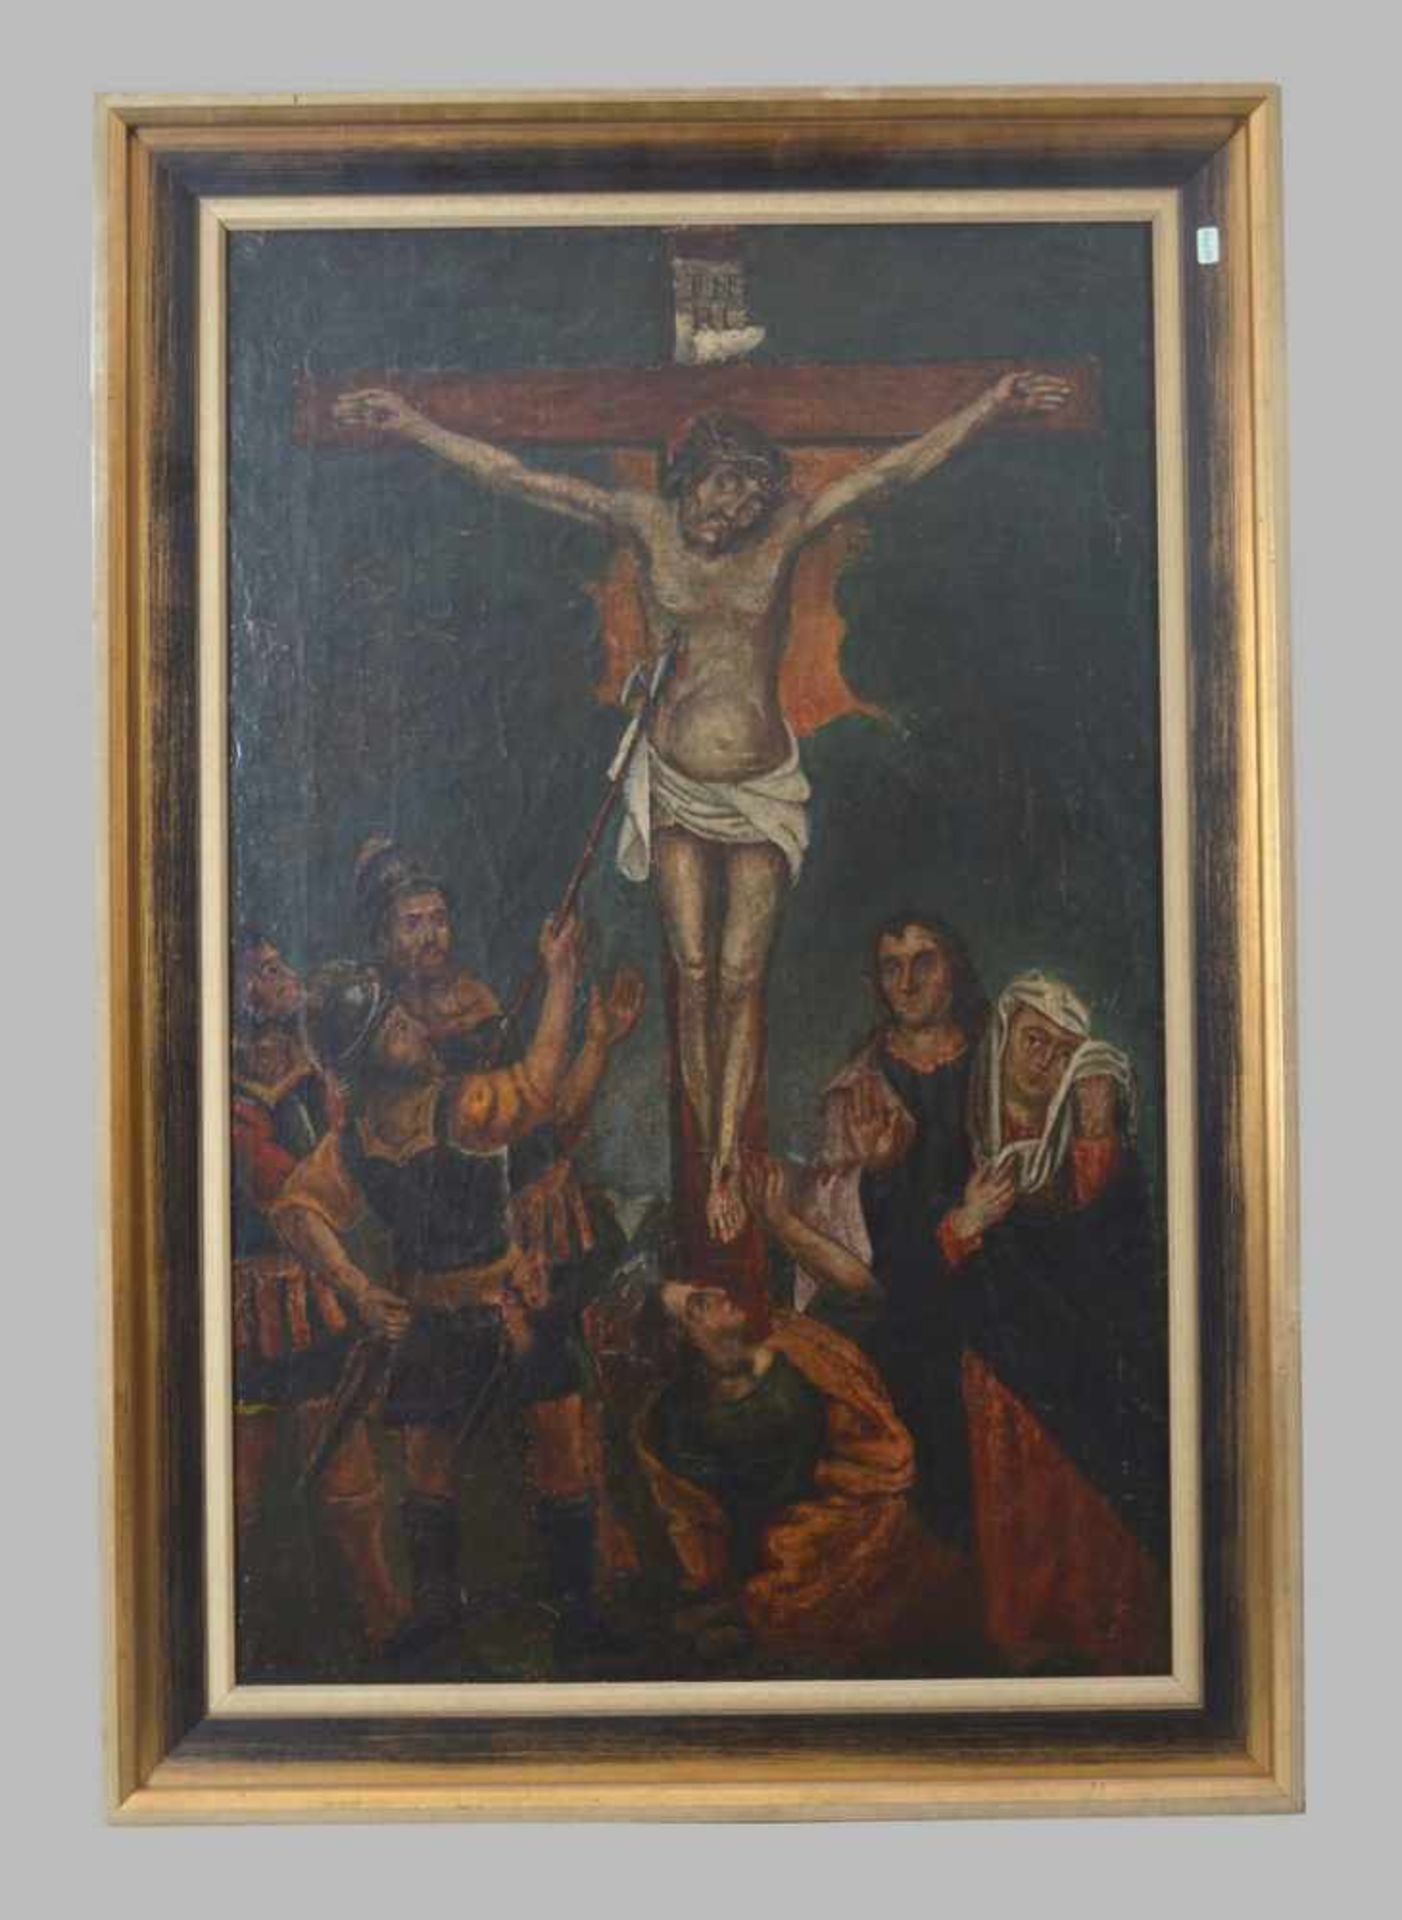 Unbekannter Maler 17./18. Jh., Christus am Kreuz, umrankt von Soldaten, Öl/Lwd., auf Holz